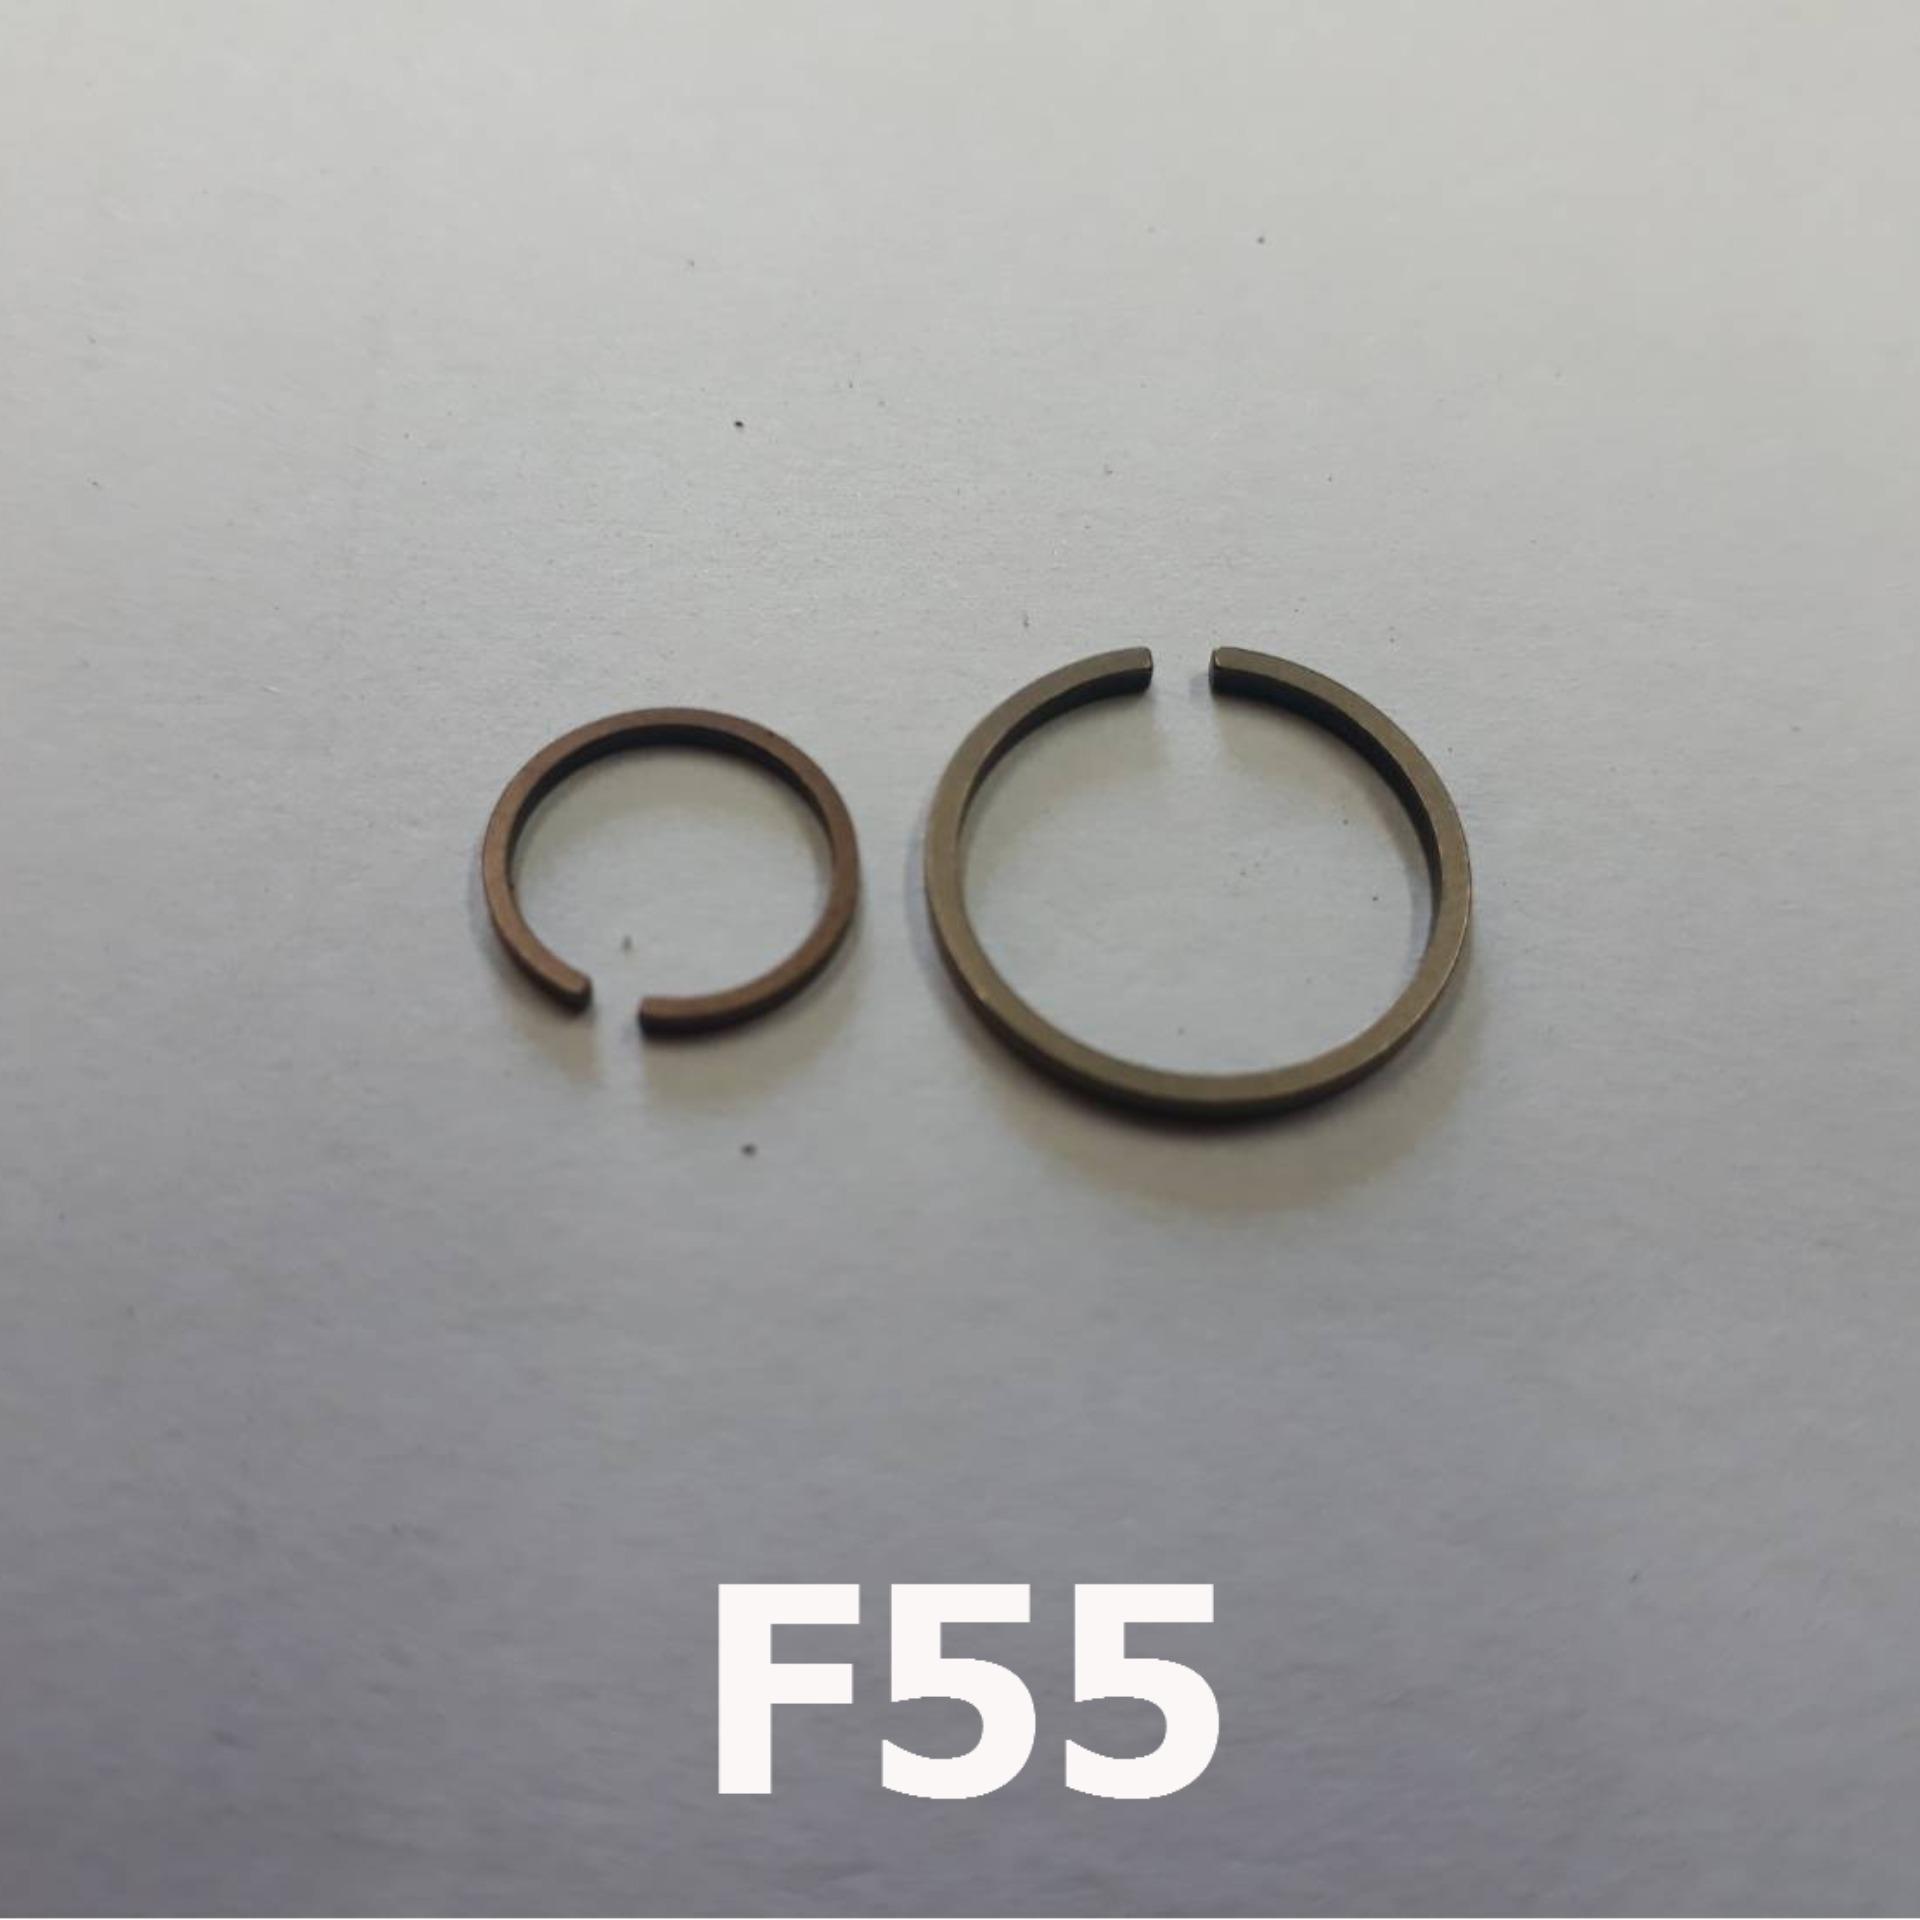 แหวนหน้า และแหวนหลัง สำหรับซ่อมเทอร์โบ ของ F55 F55v (แก้ปัญหาน้ำมันไหล รั่วหน้าและหลัง) แหวนเทอร์โบ